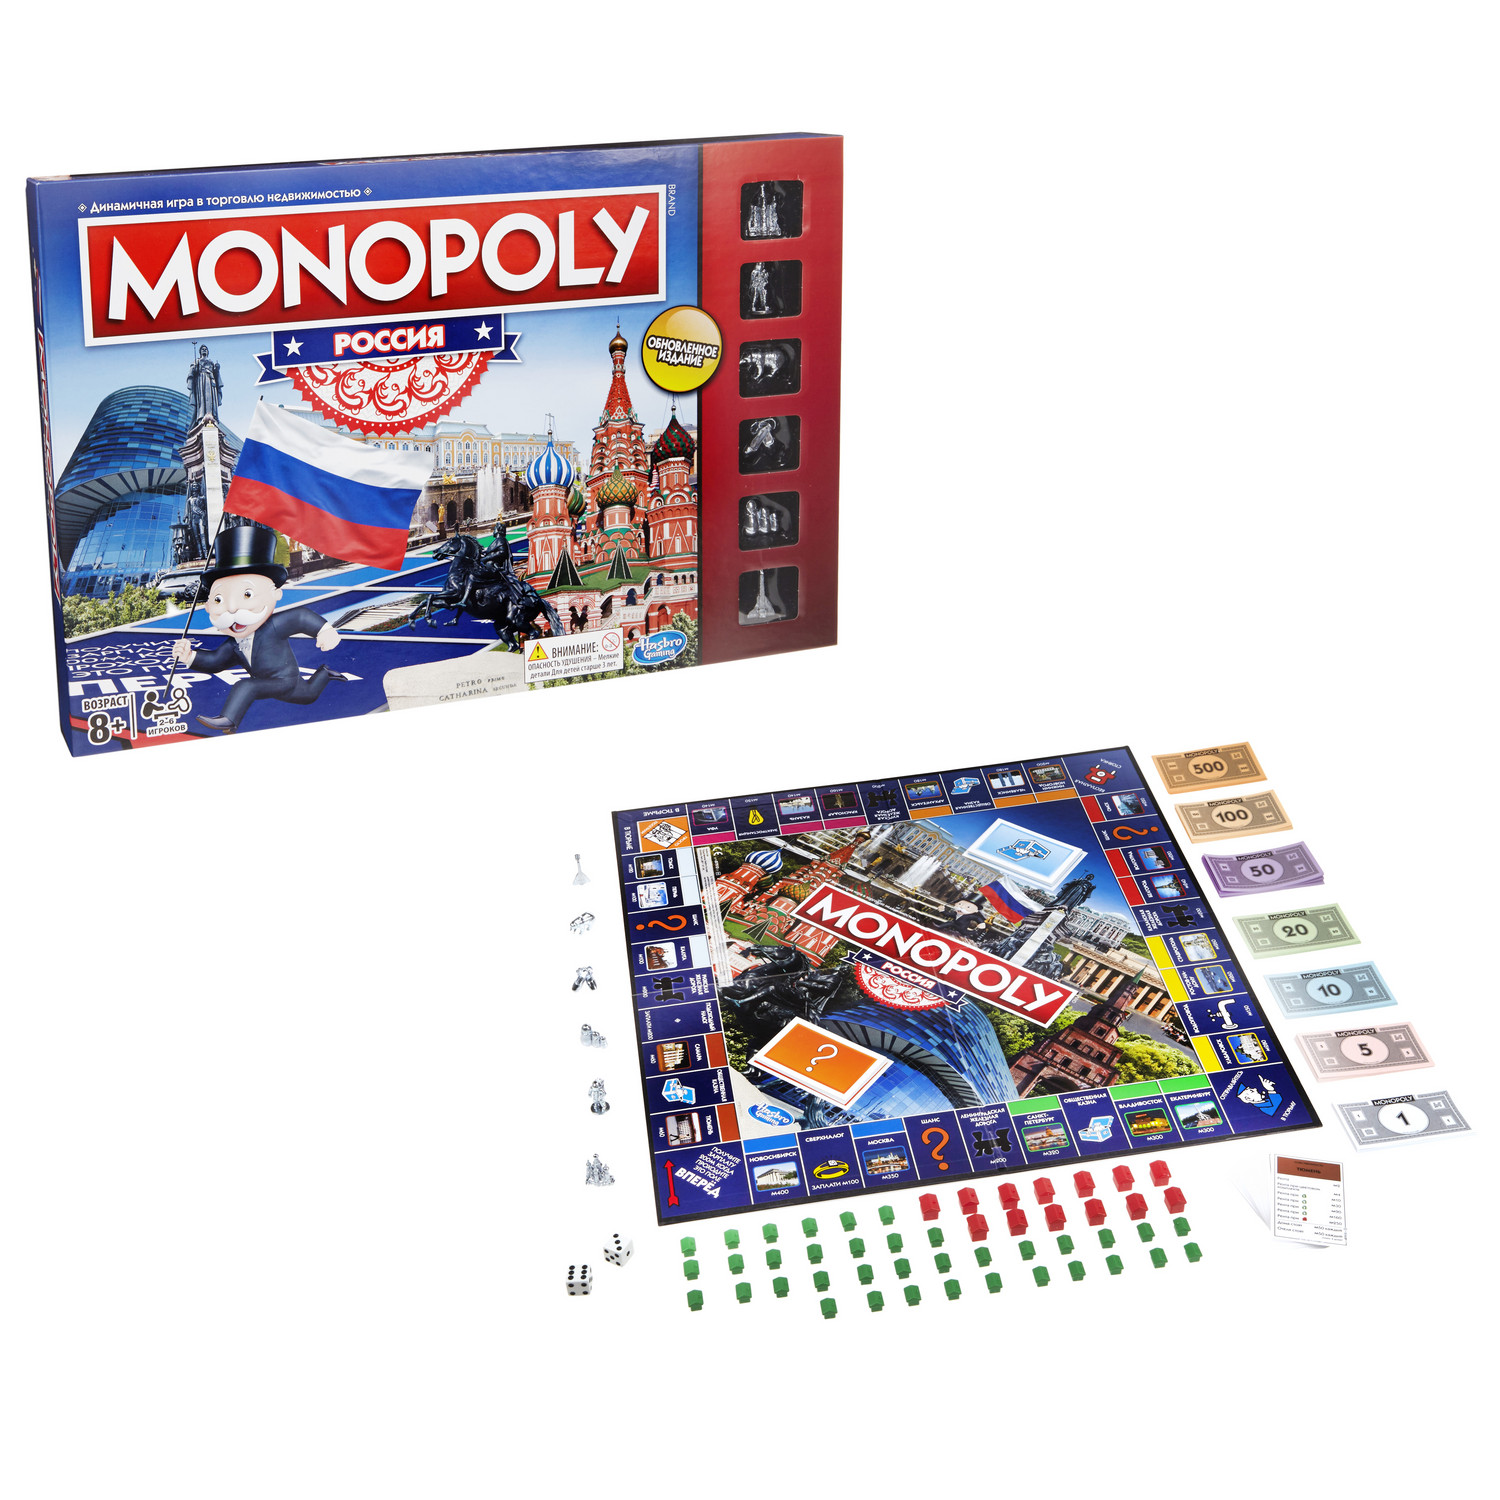 фото Monopoly настольная игра монополия россия